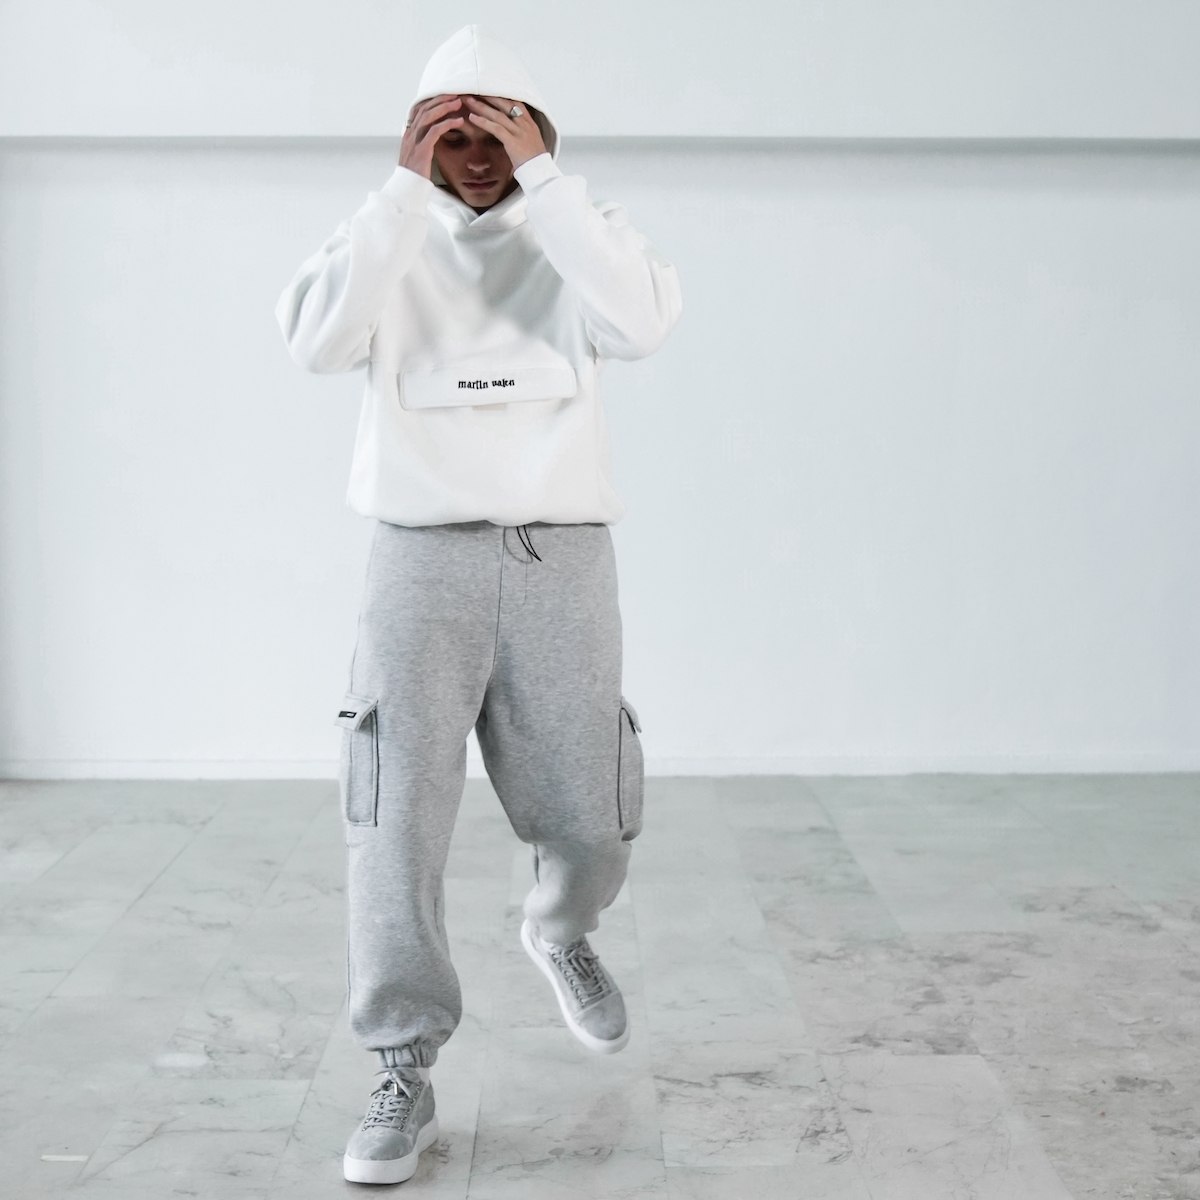 Sweatshirt Branco Oversized para Homens com Bolso Canguru e Capuz | Martin Valen